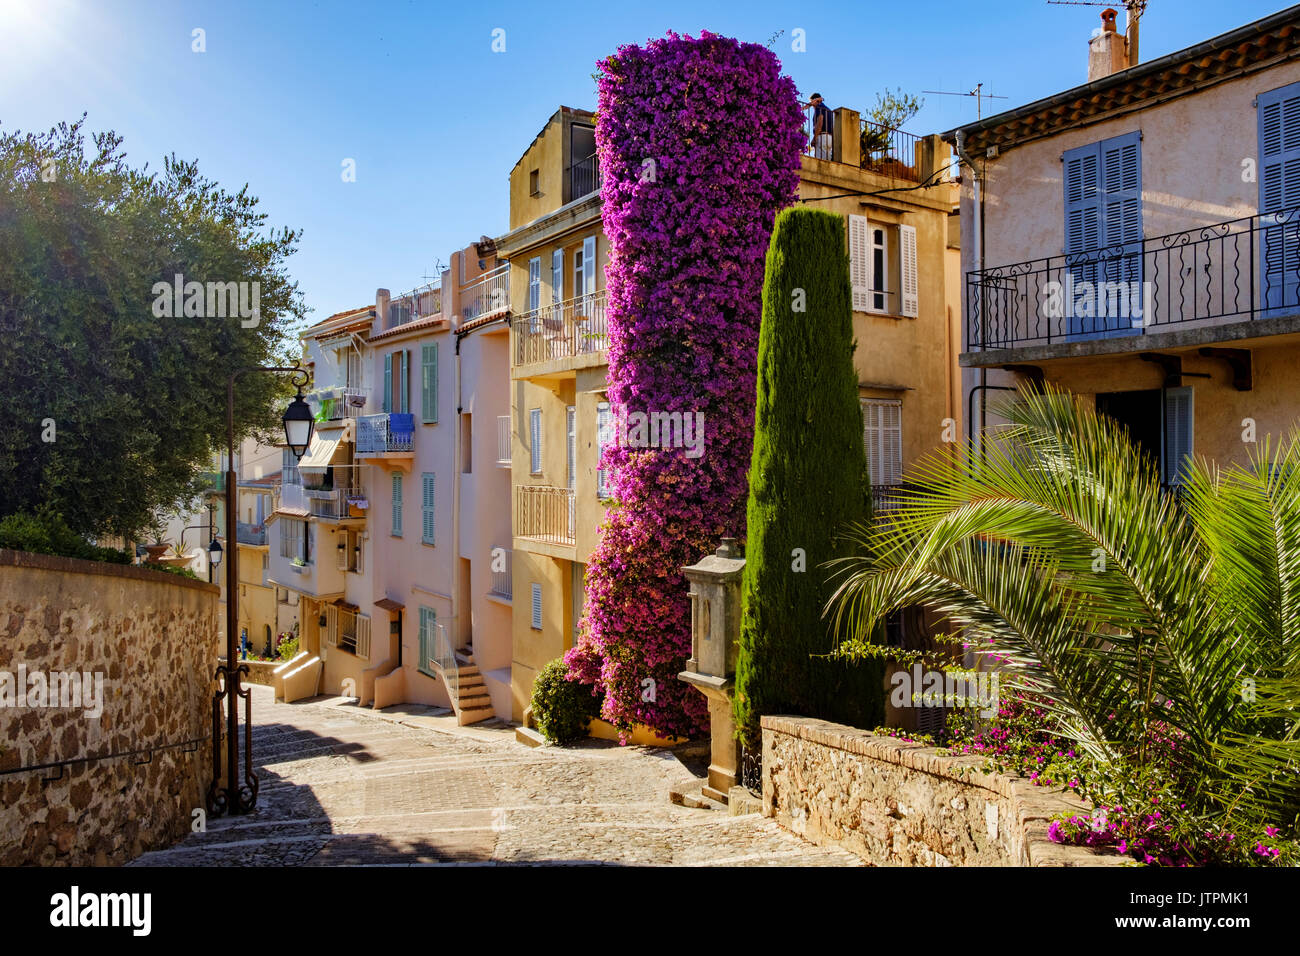 Une scène de rue colorée dans la vieille ville, le Suquet, à Cannes sur la Côte d'azur dans le sud de la France. Les maisons sont peintes dans des tons provinciaux Banque D'Images